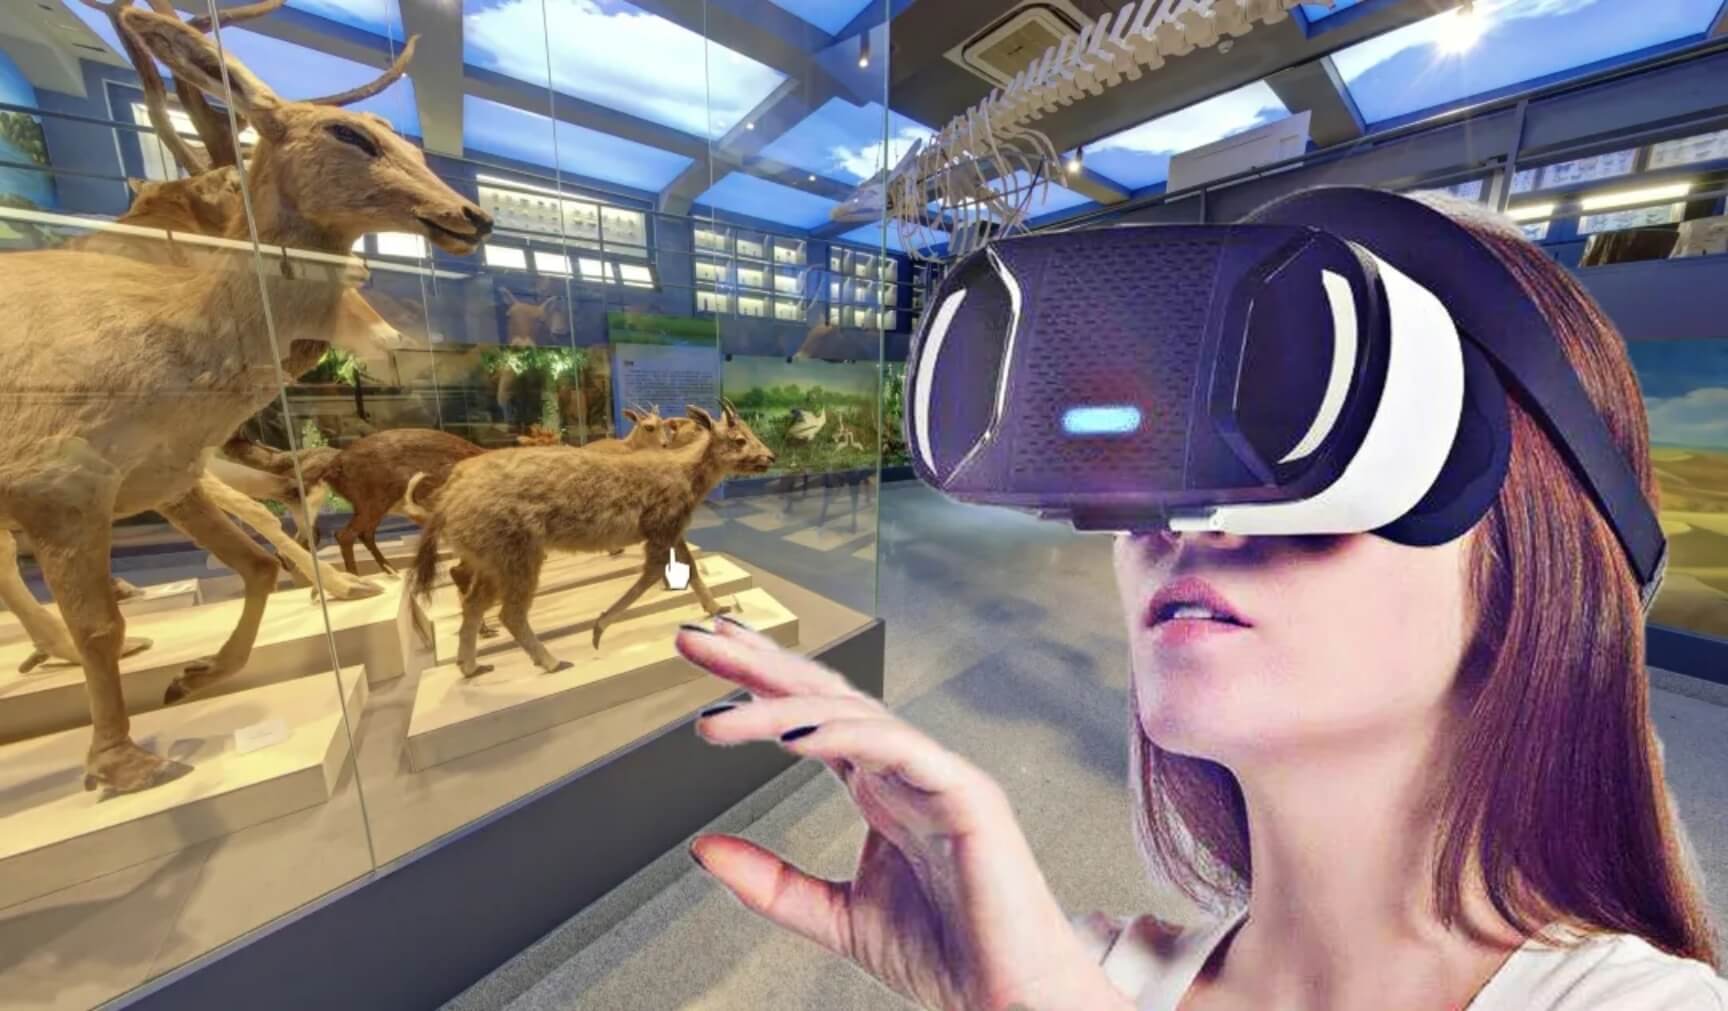 图片显示一位女士戴着虚拟现实头盔，似乎在体验虚拟世界。背景是动物标本展示，包括鹿类和骨架。